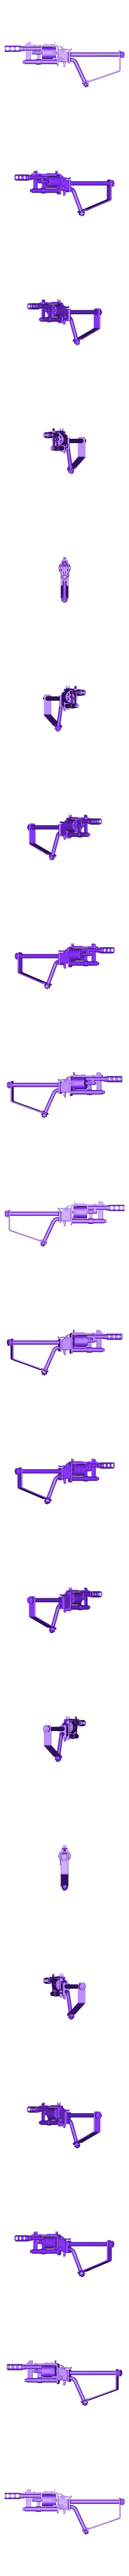 Pipe Revolver RifleOBJ.obj Descargar archivo OBJ Fusil Revólver de Pipa - FO4 • Objeto imprimible en 3D, Gabbi_Card